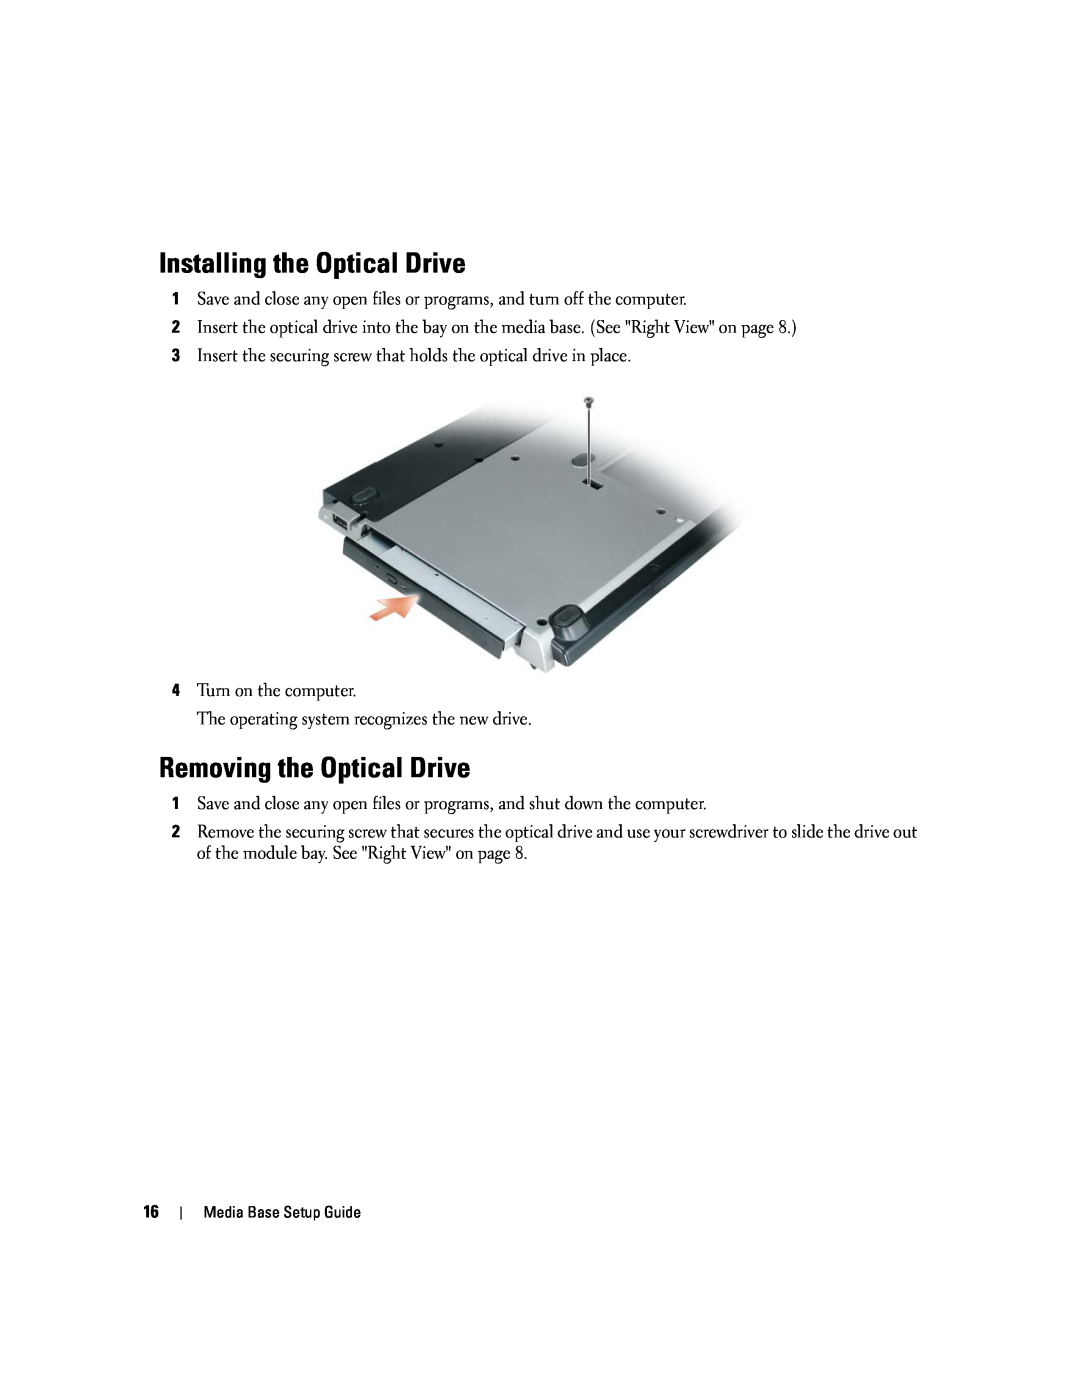 Dell Model PR09S setup guide Installing the Optical Drive, Removing the Optical Drive 